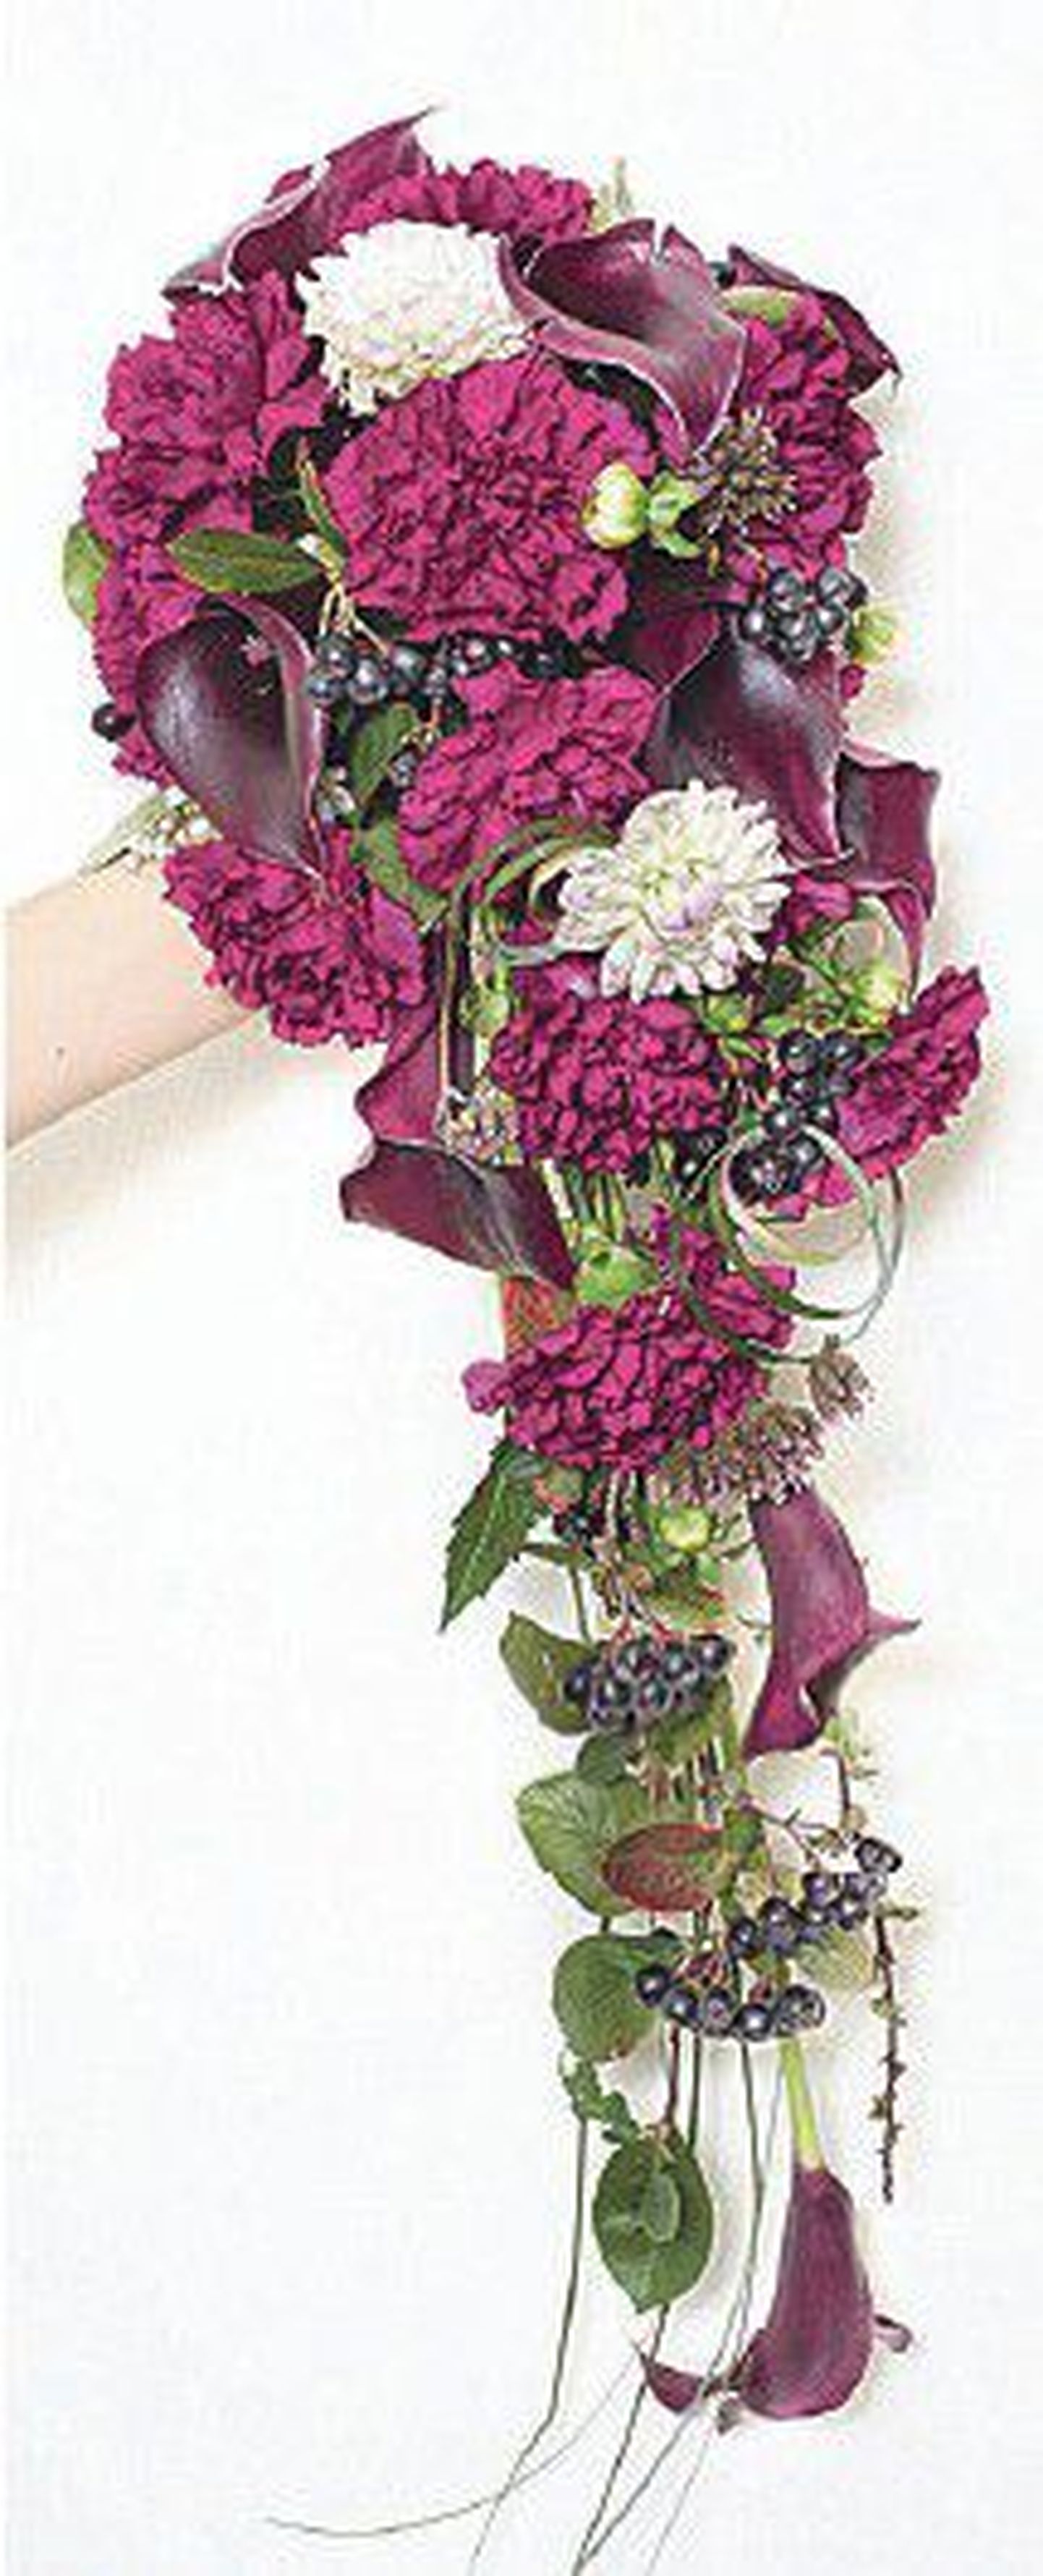 А эту композицию Инга Купинская назвала «Букет для ноябрьских невест»: «Это букет для эстеток – темно-лиловый в сочетании с фиолетовым и с ягодными гроздями... Такой может быть в руках у очень необычной девушки, ценительницы благородных оттенков и смелых сочетаний».